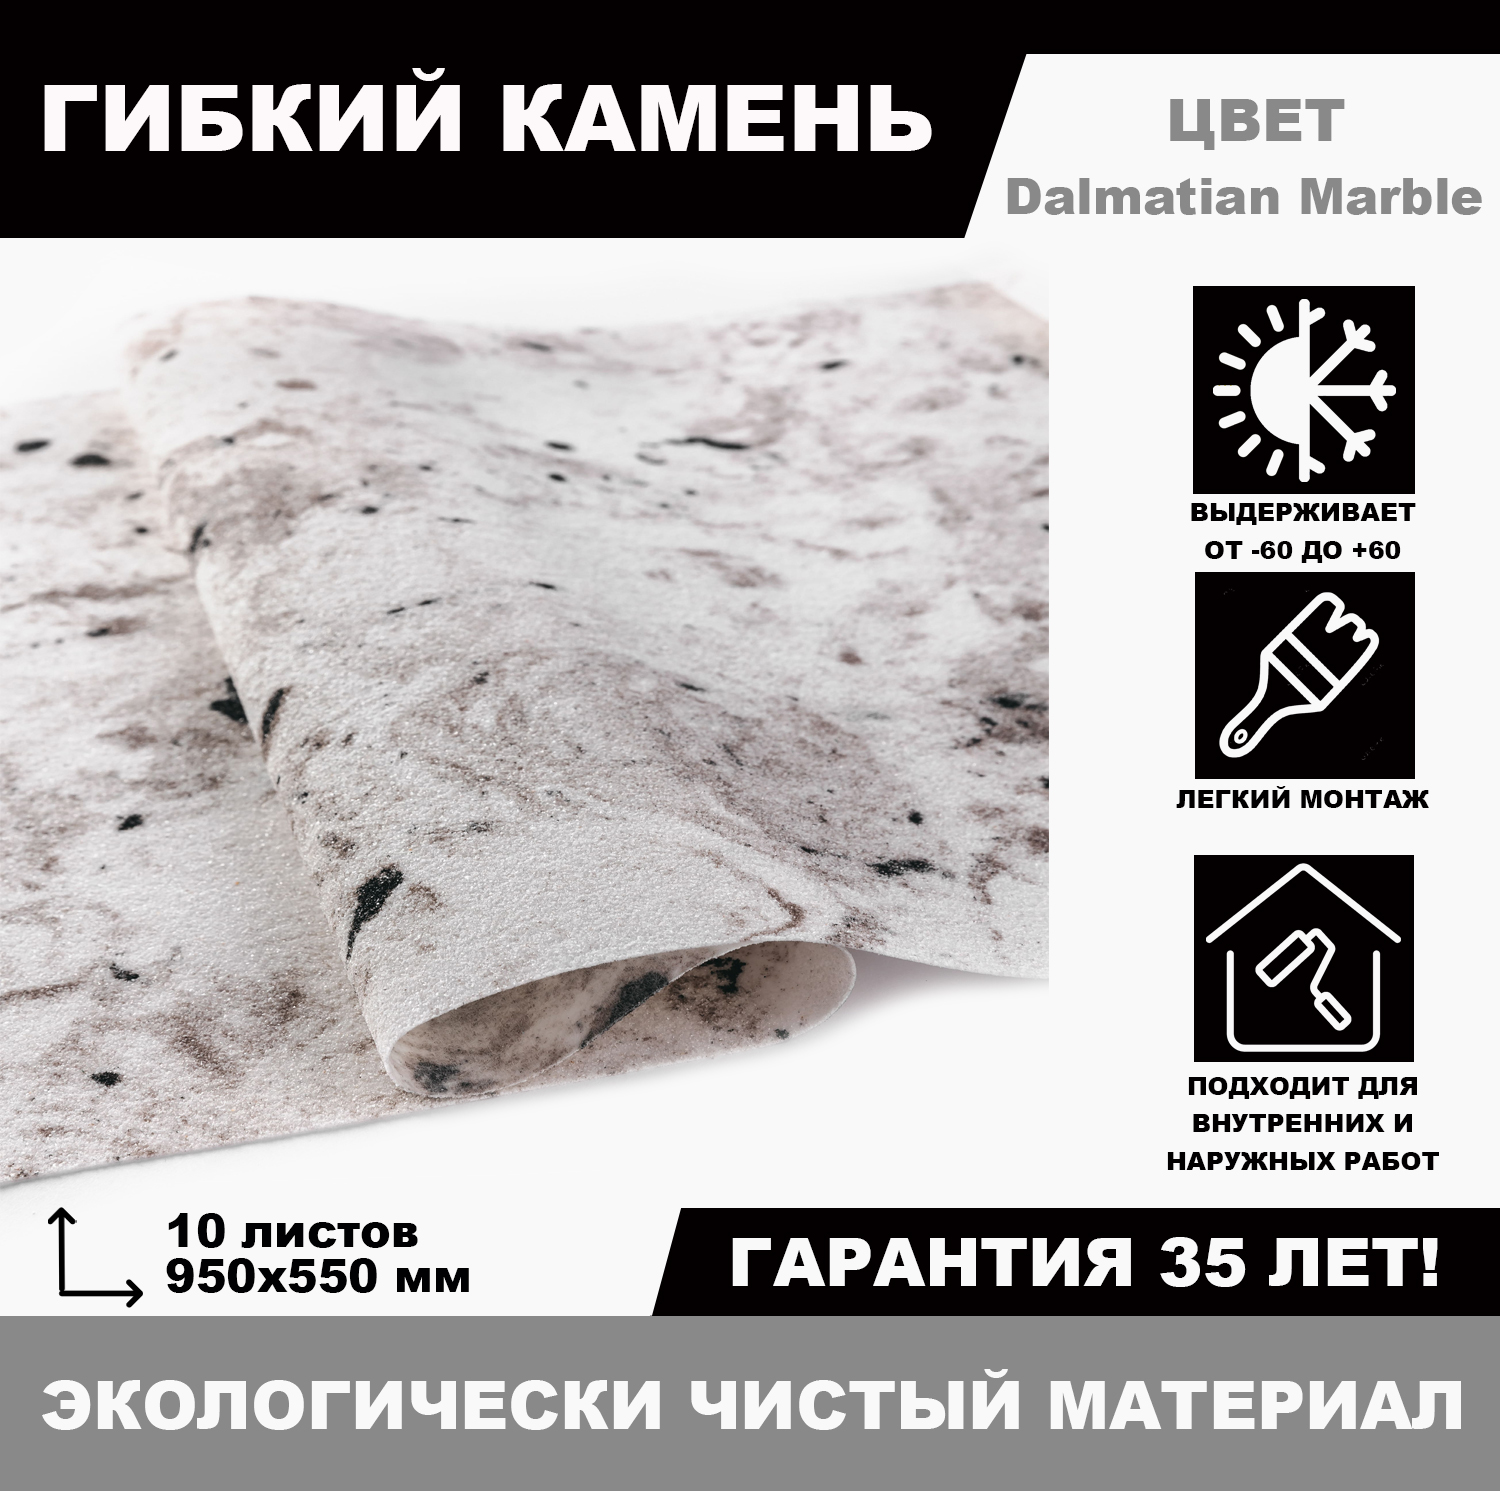 Гибкий камень Dalmatian Marble, 10 листов планер на магнитах с отрывными листами 50 листов